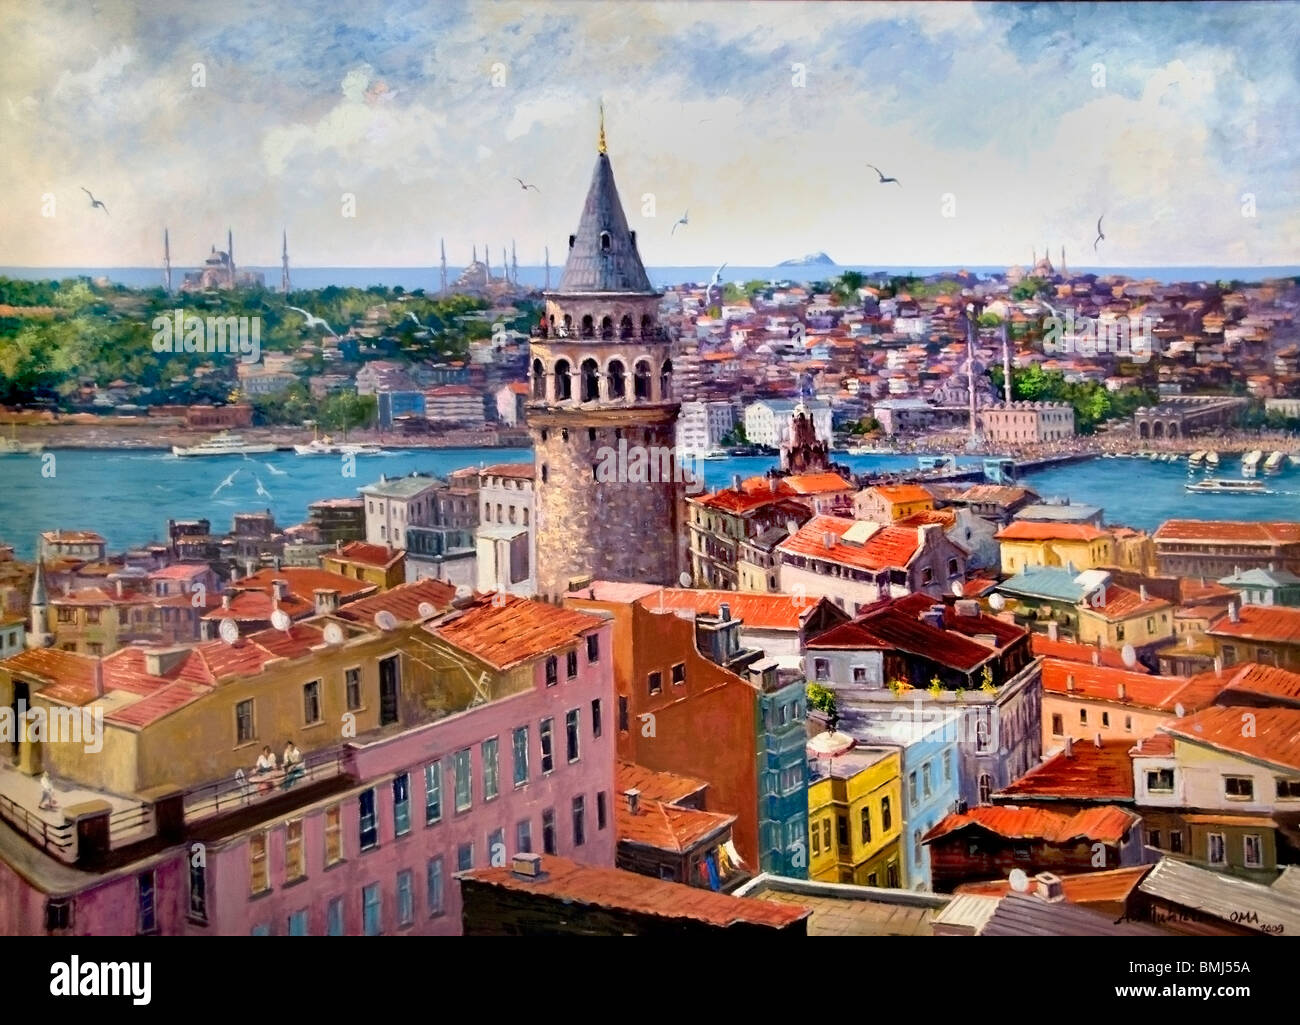 Istanbul Turchia Golden Horn ponte Galata waterfront tower Bosforo lato sinistro Foto Stock